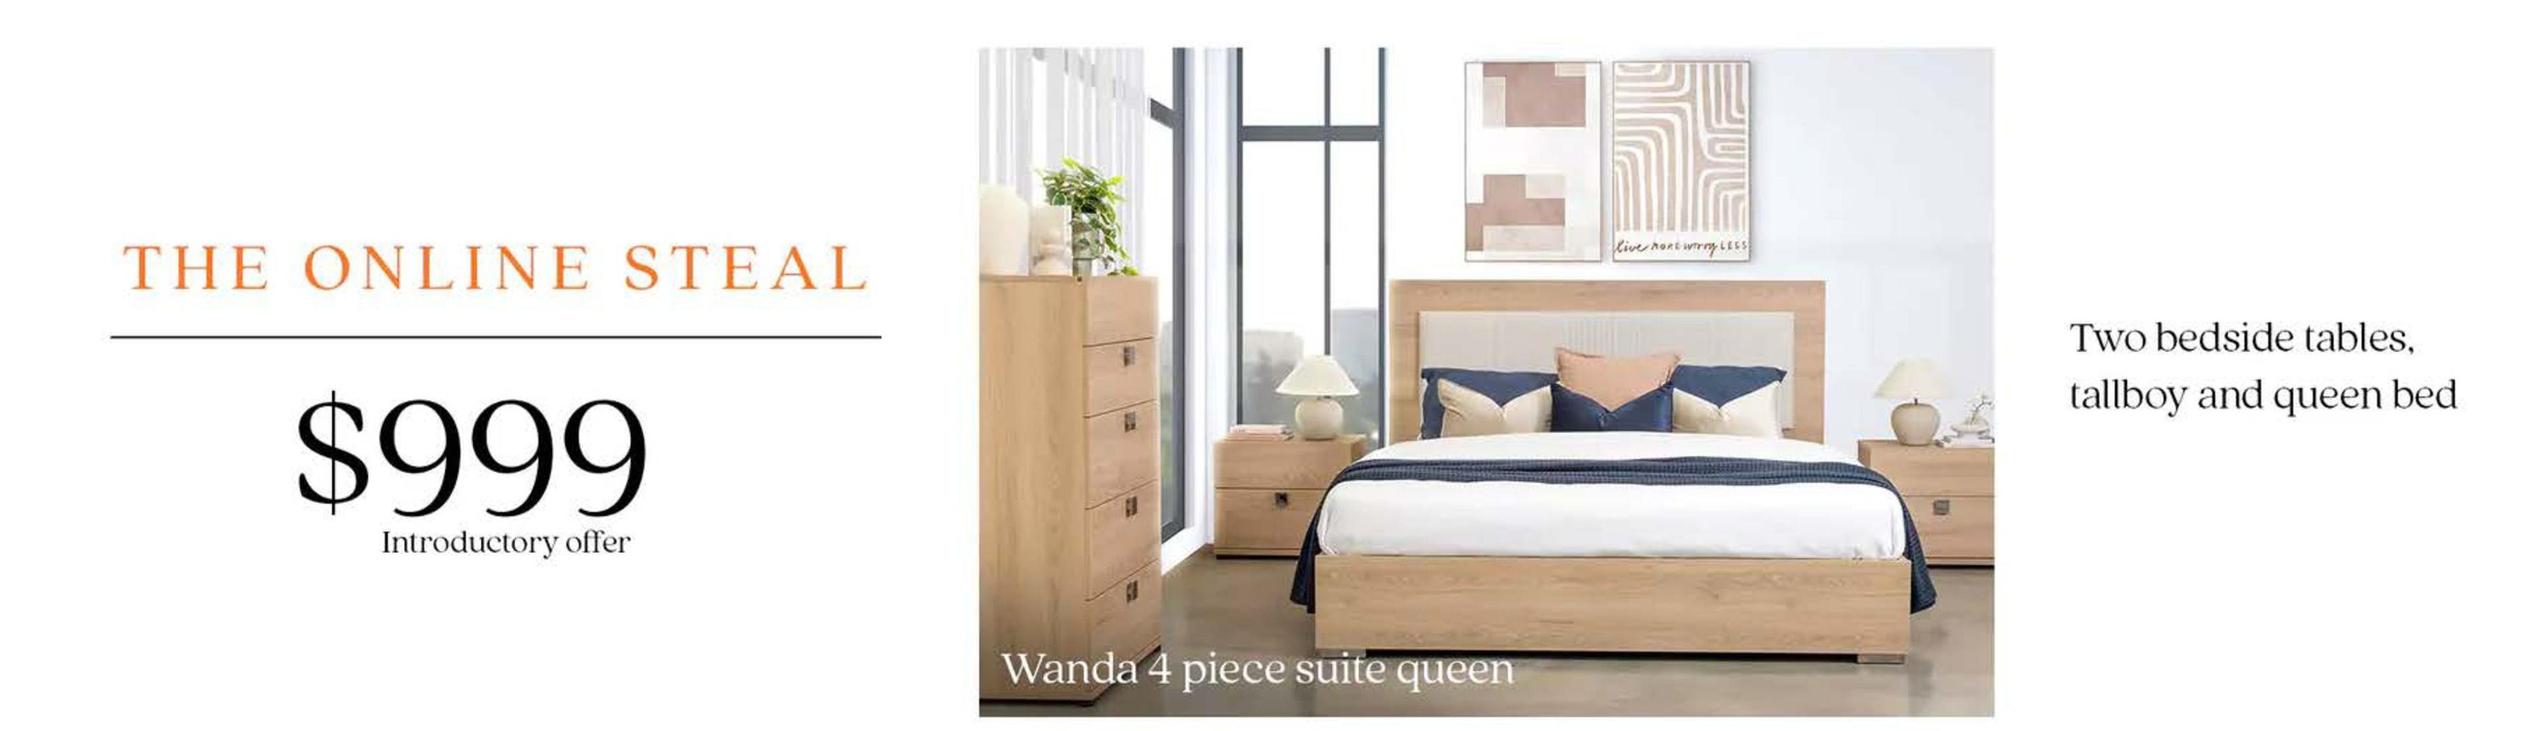 Bedrooms offers at $999 in Furniture Bazaar